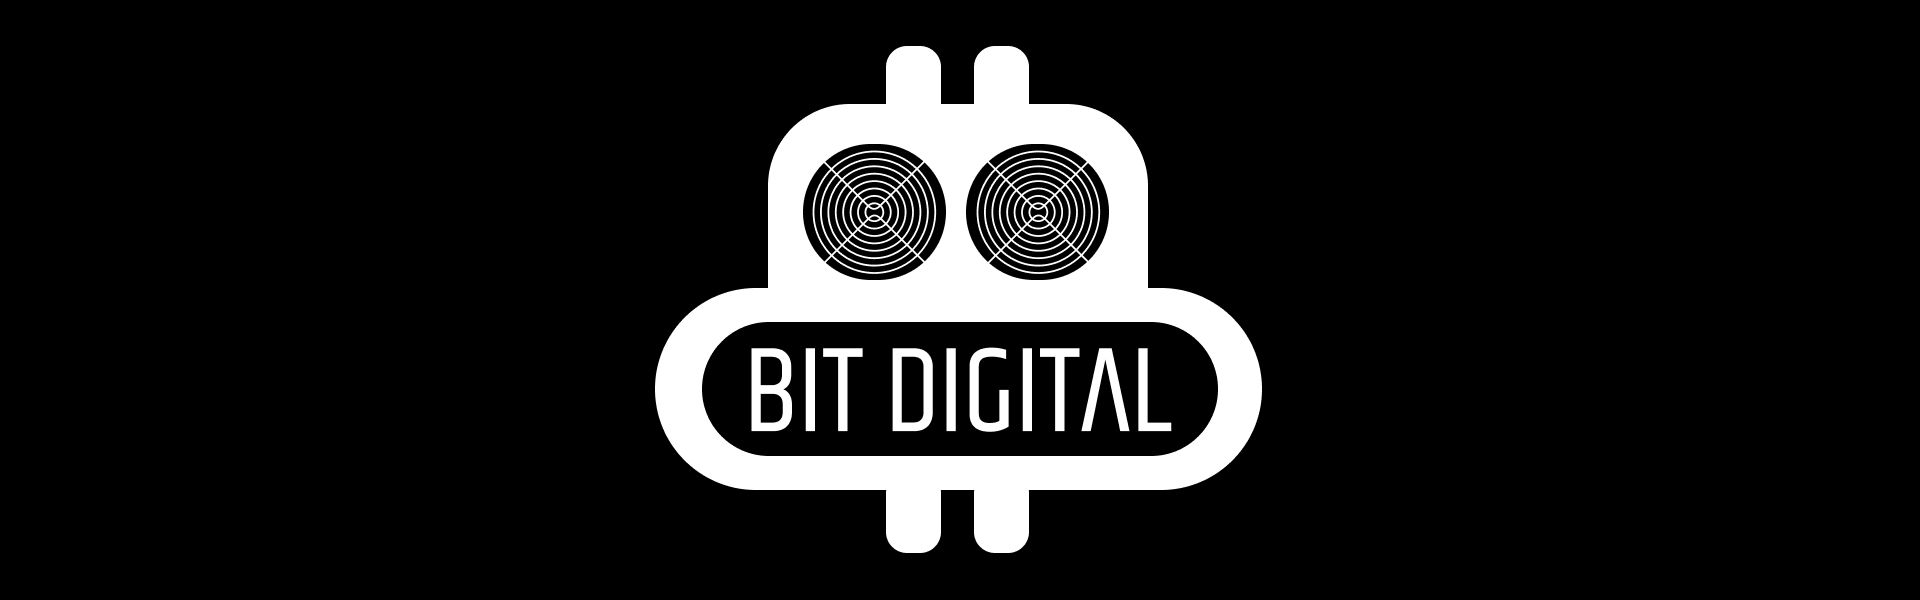 Майнер Bit Digital вирішив заробити за допомогою ШІ